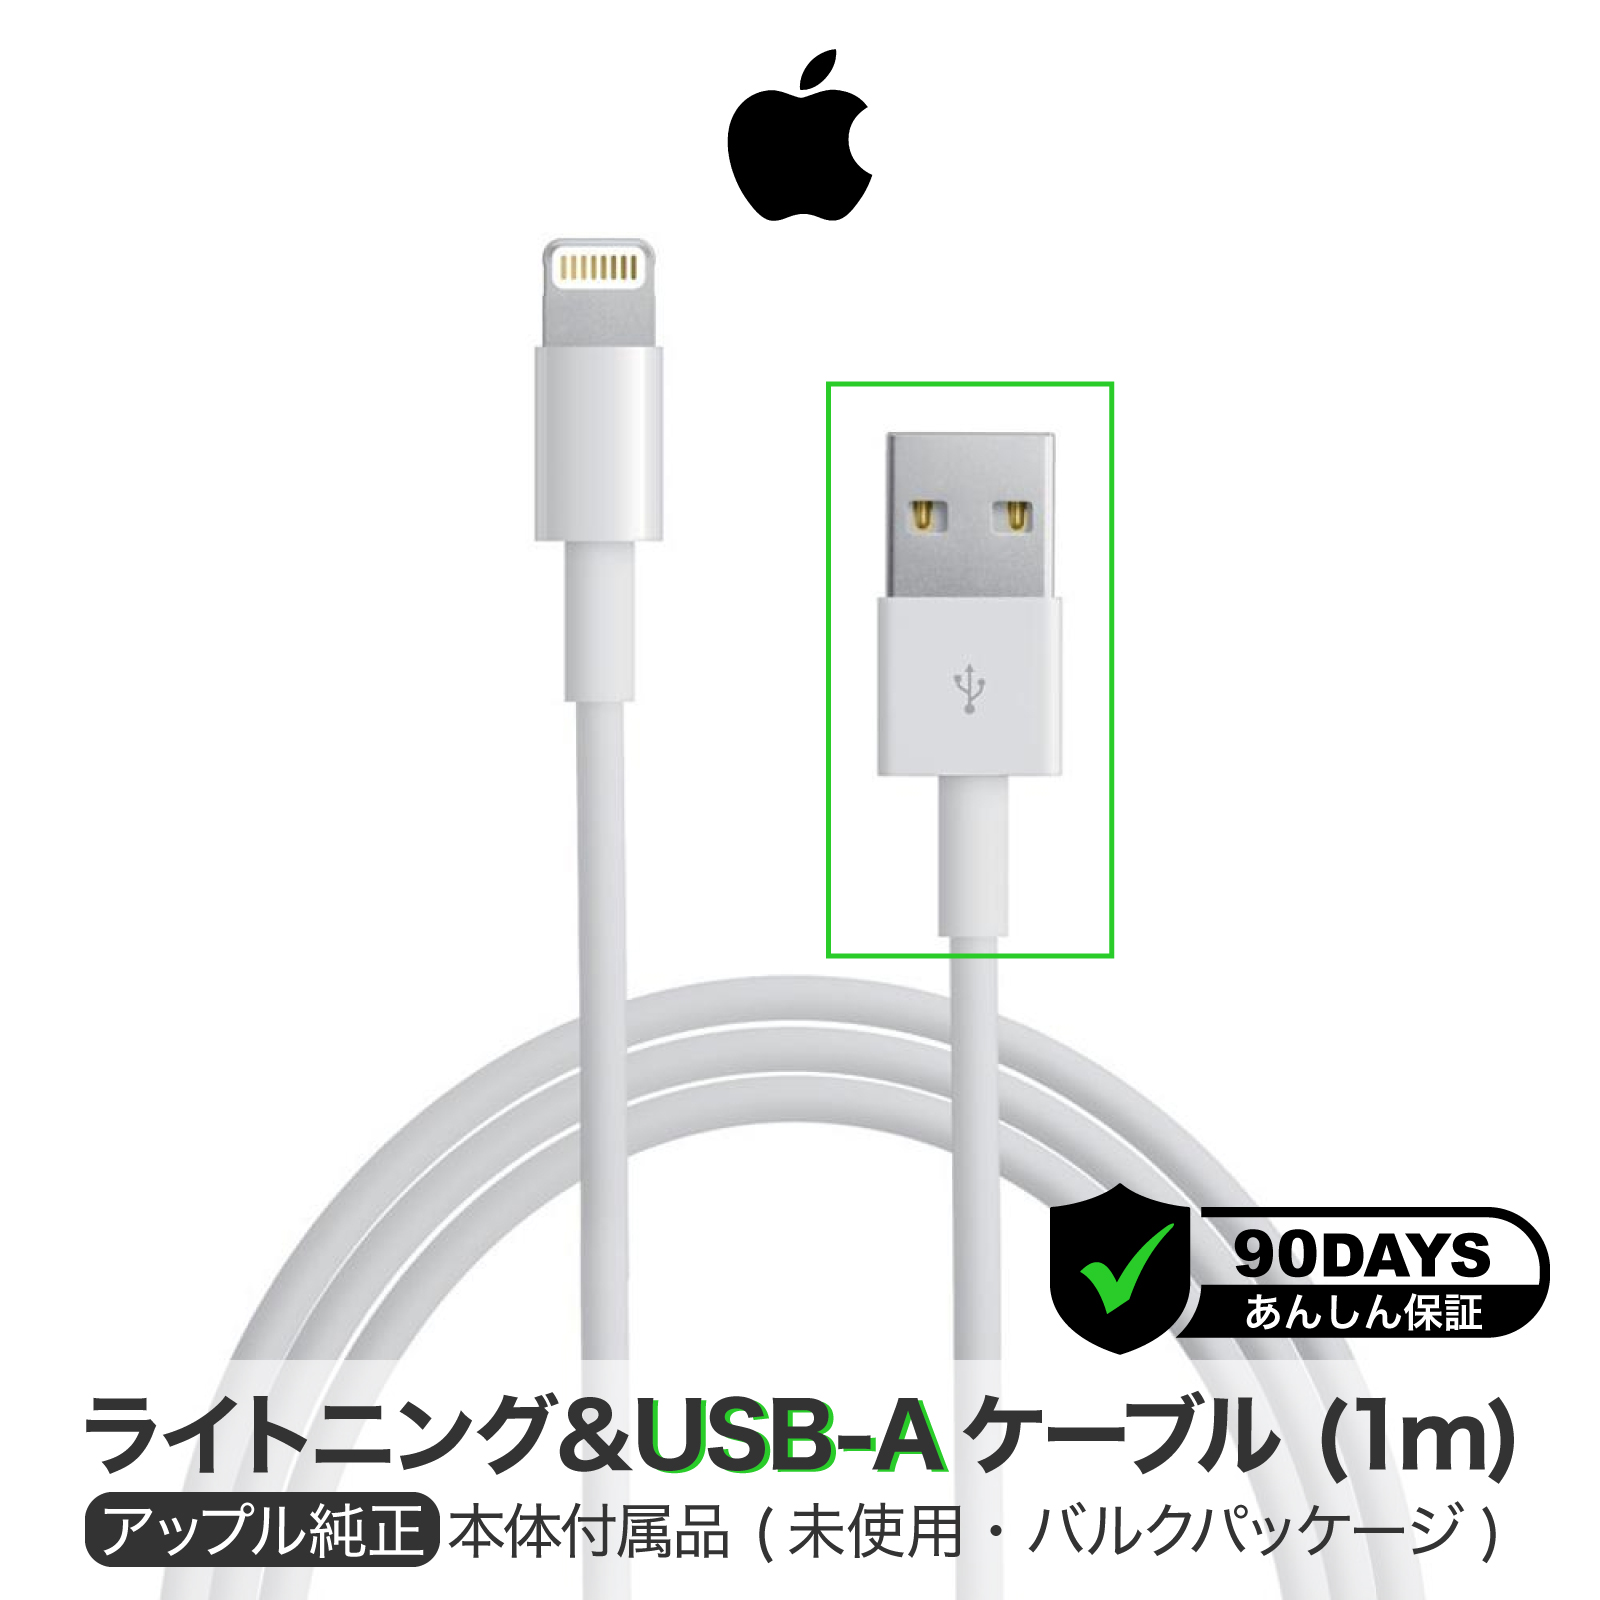 Apple 純正 ライトニングケーブル 1m Lightning USBケーブル iPhone